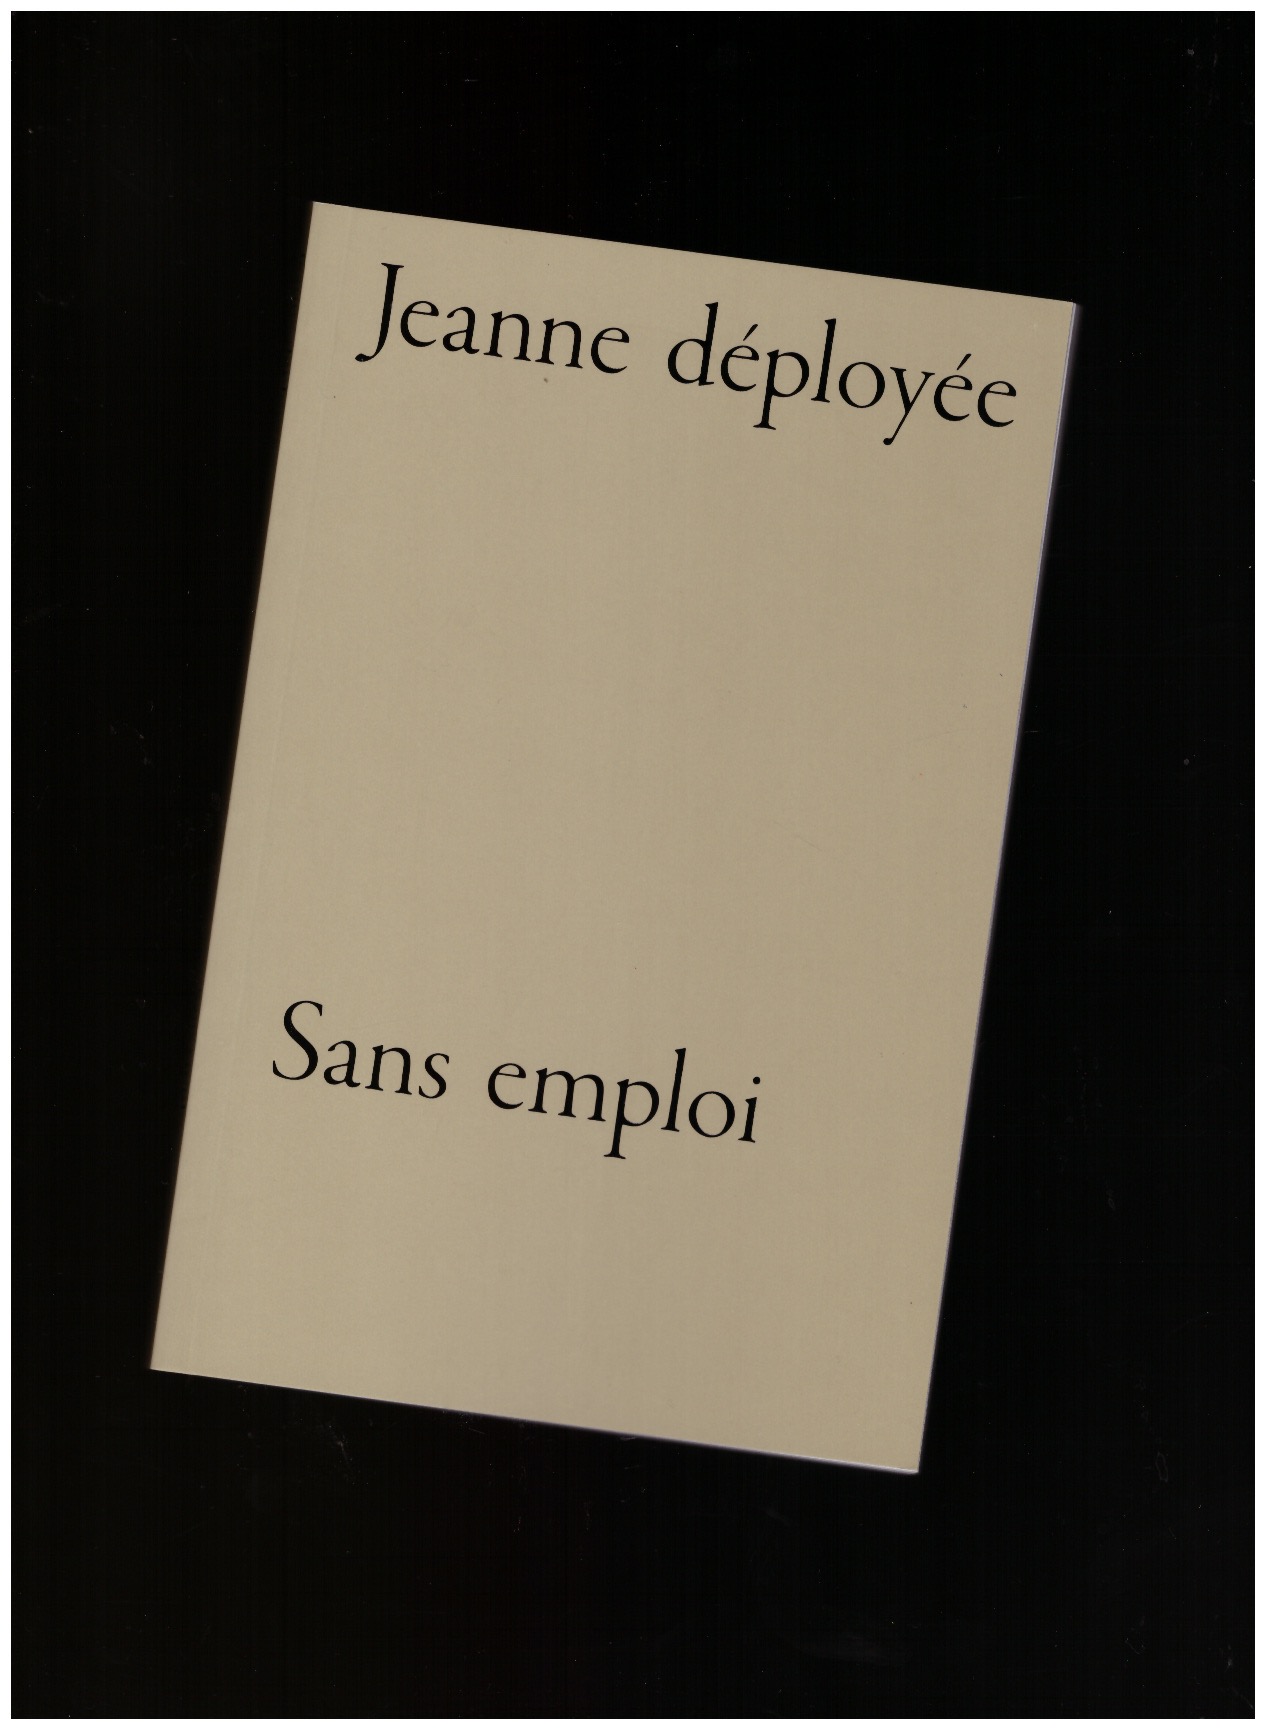 COGNEE, Gaëlle; FAUVEL, Mikaël (eds.) - Jeanne déployée sans emploi